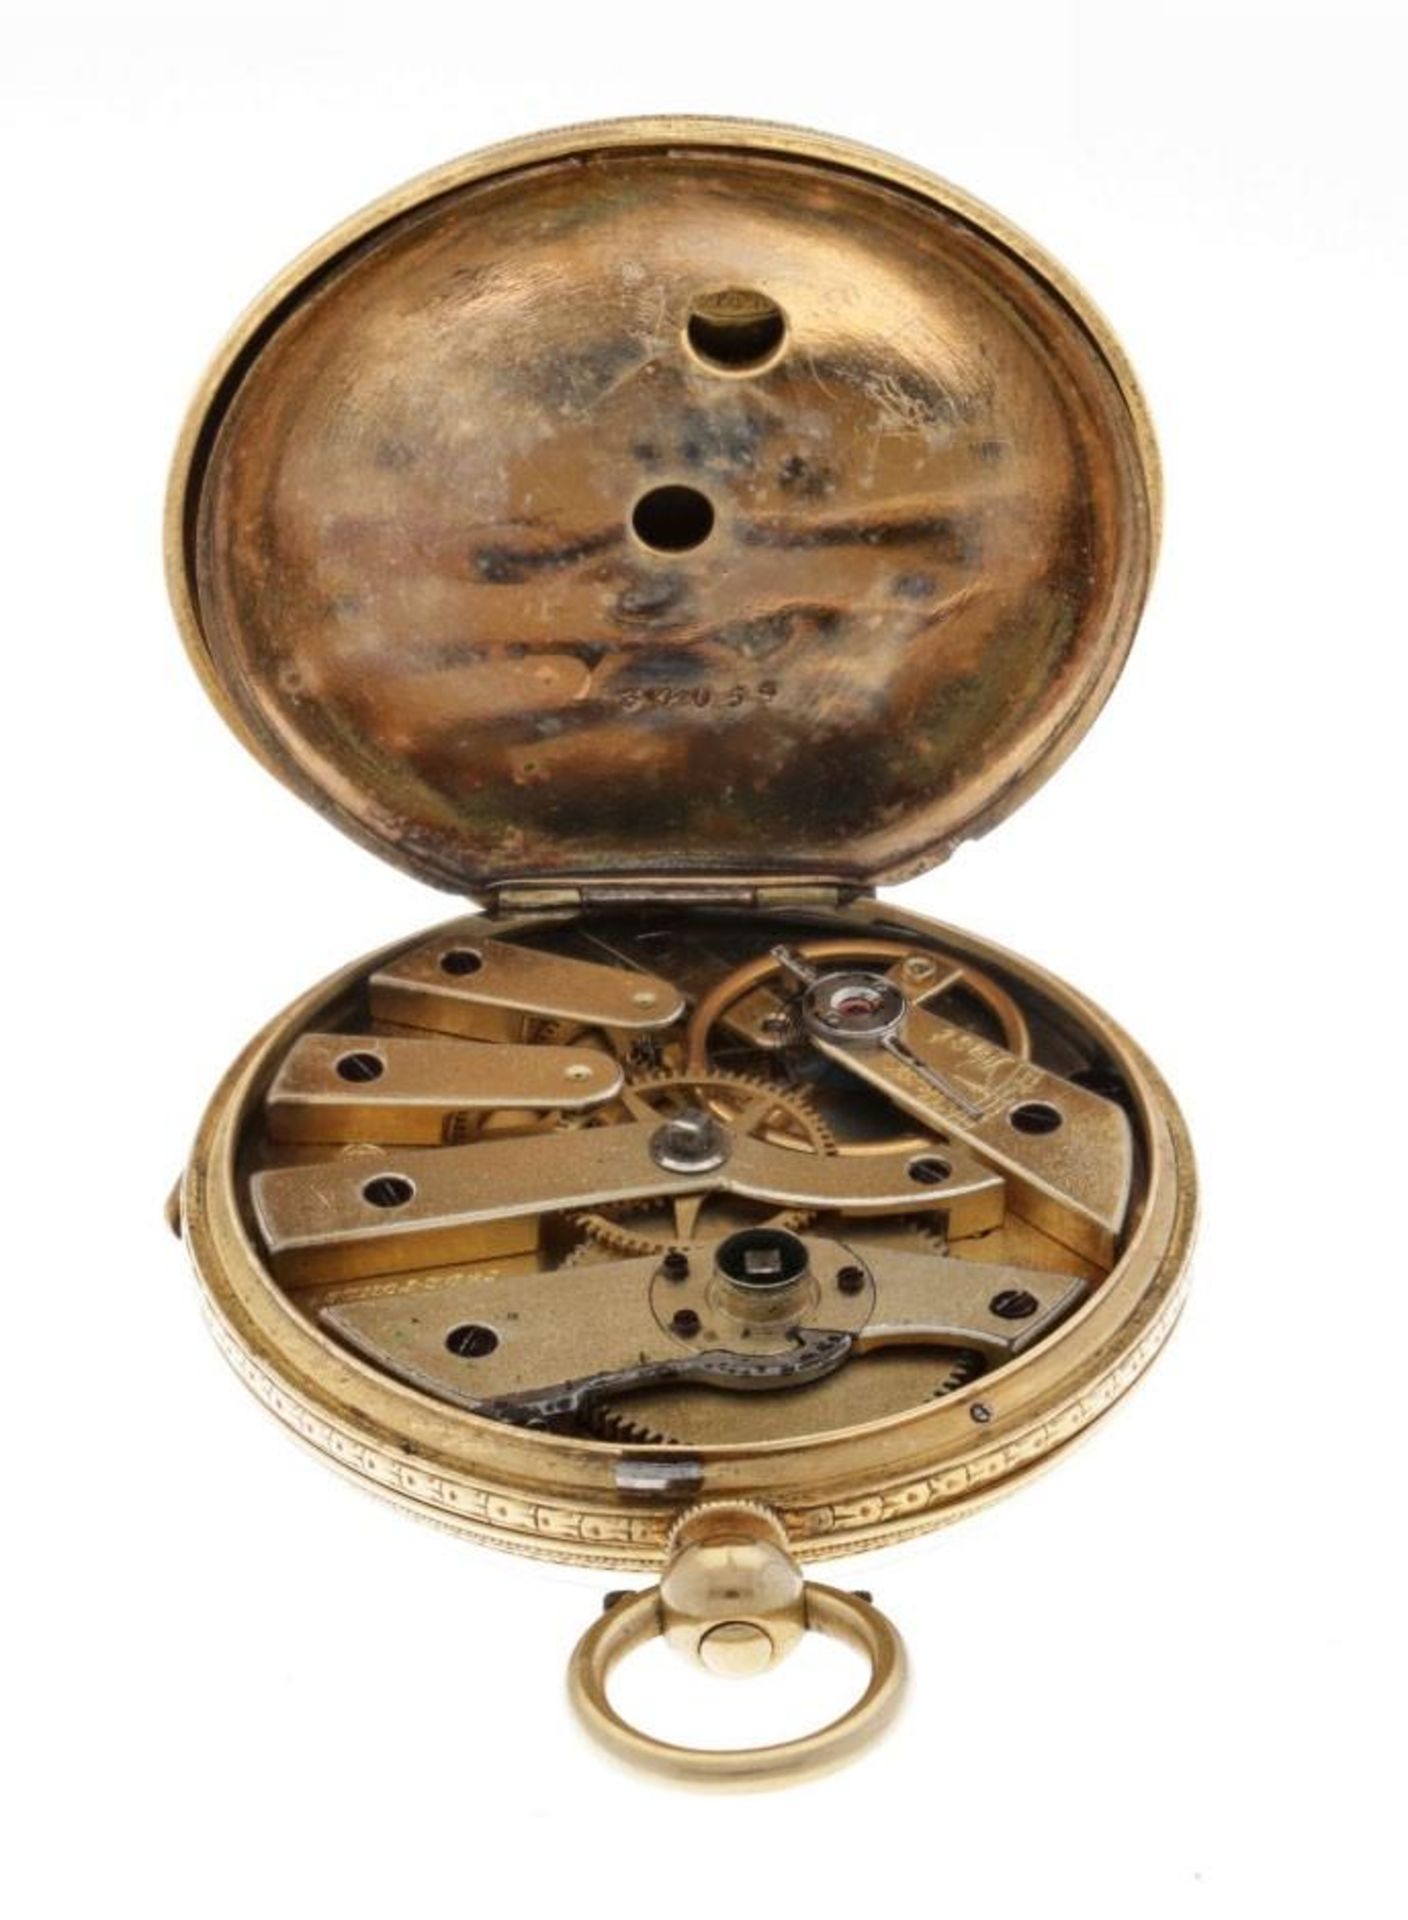 Stauffer de-Fonds cylinder escapement - Men's pocket watch - appr. 1910. - Bild 5 aus 6